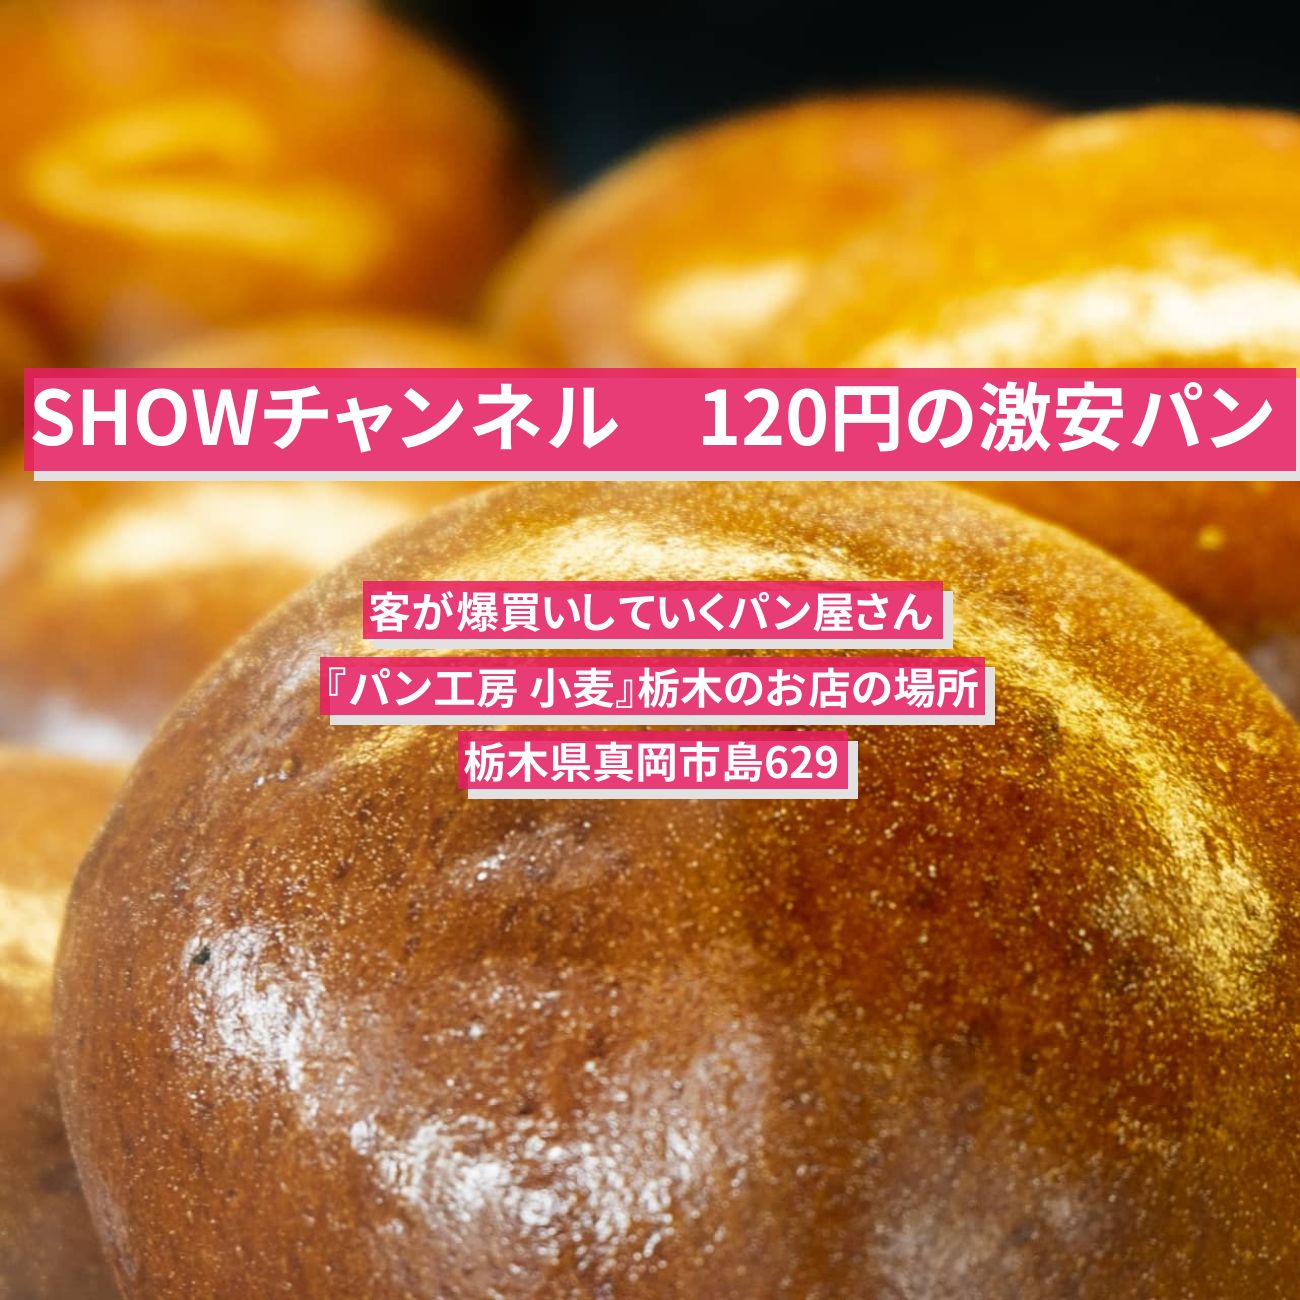 【SHOWチャンネル】120円の激安パン(客が爆買い)『パン工房 小麦』栃木のお店の場所